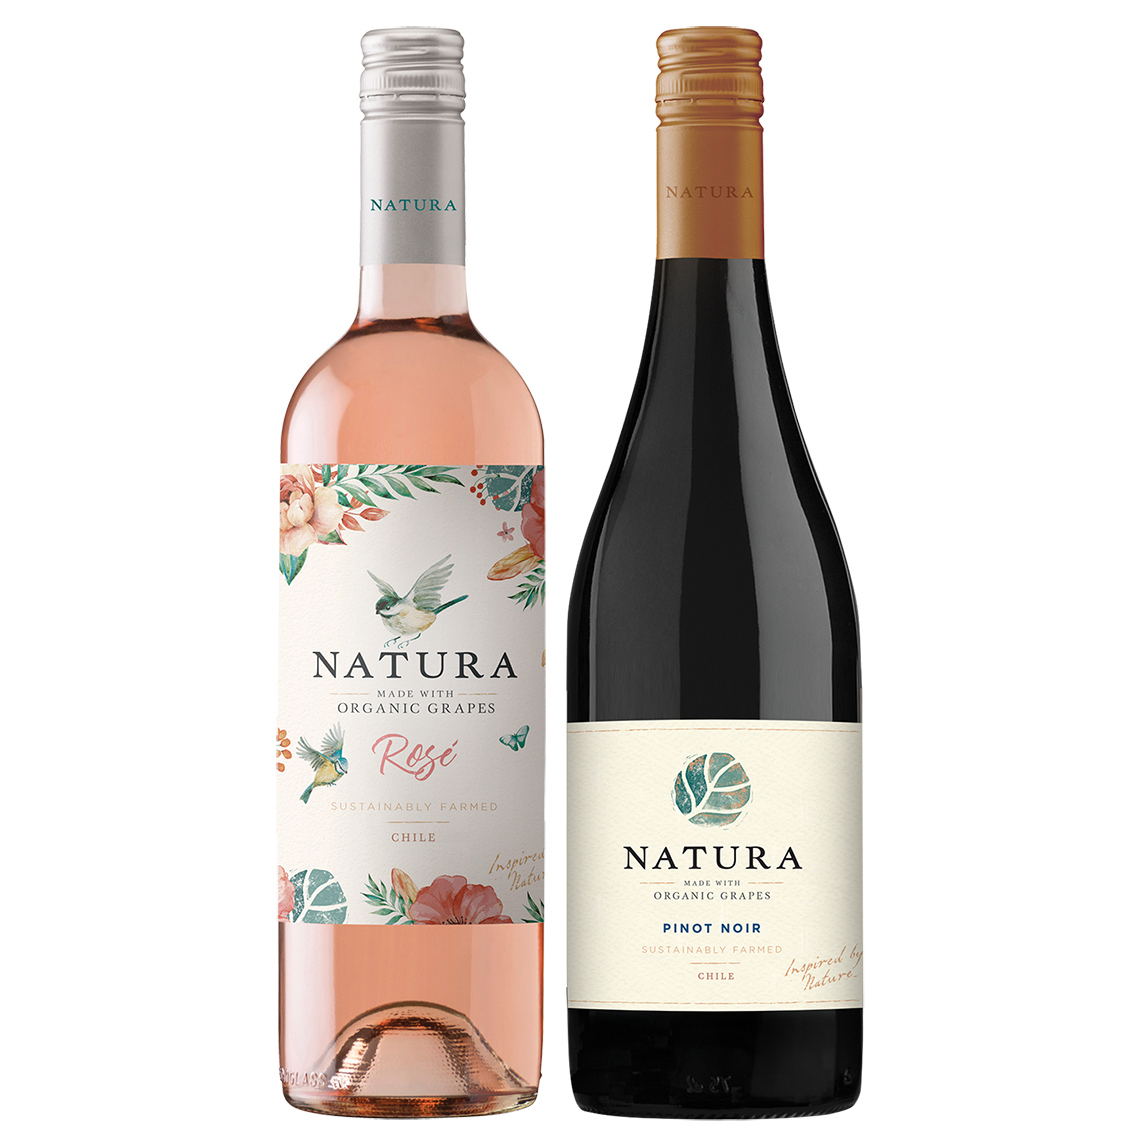 Natura 2-Pack (Natura Rosé & Natura Pinot Noir)